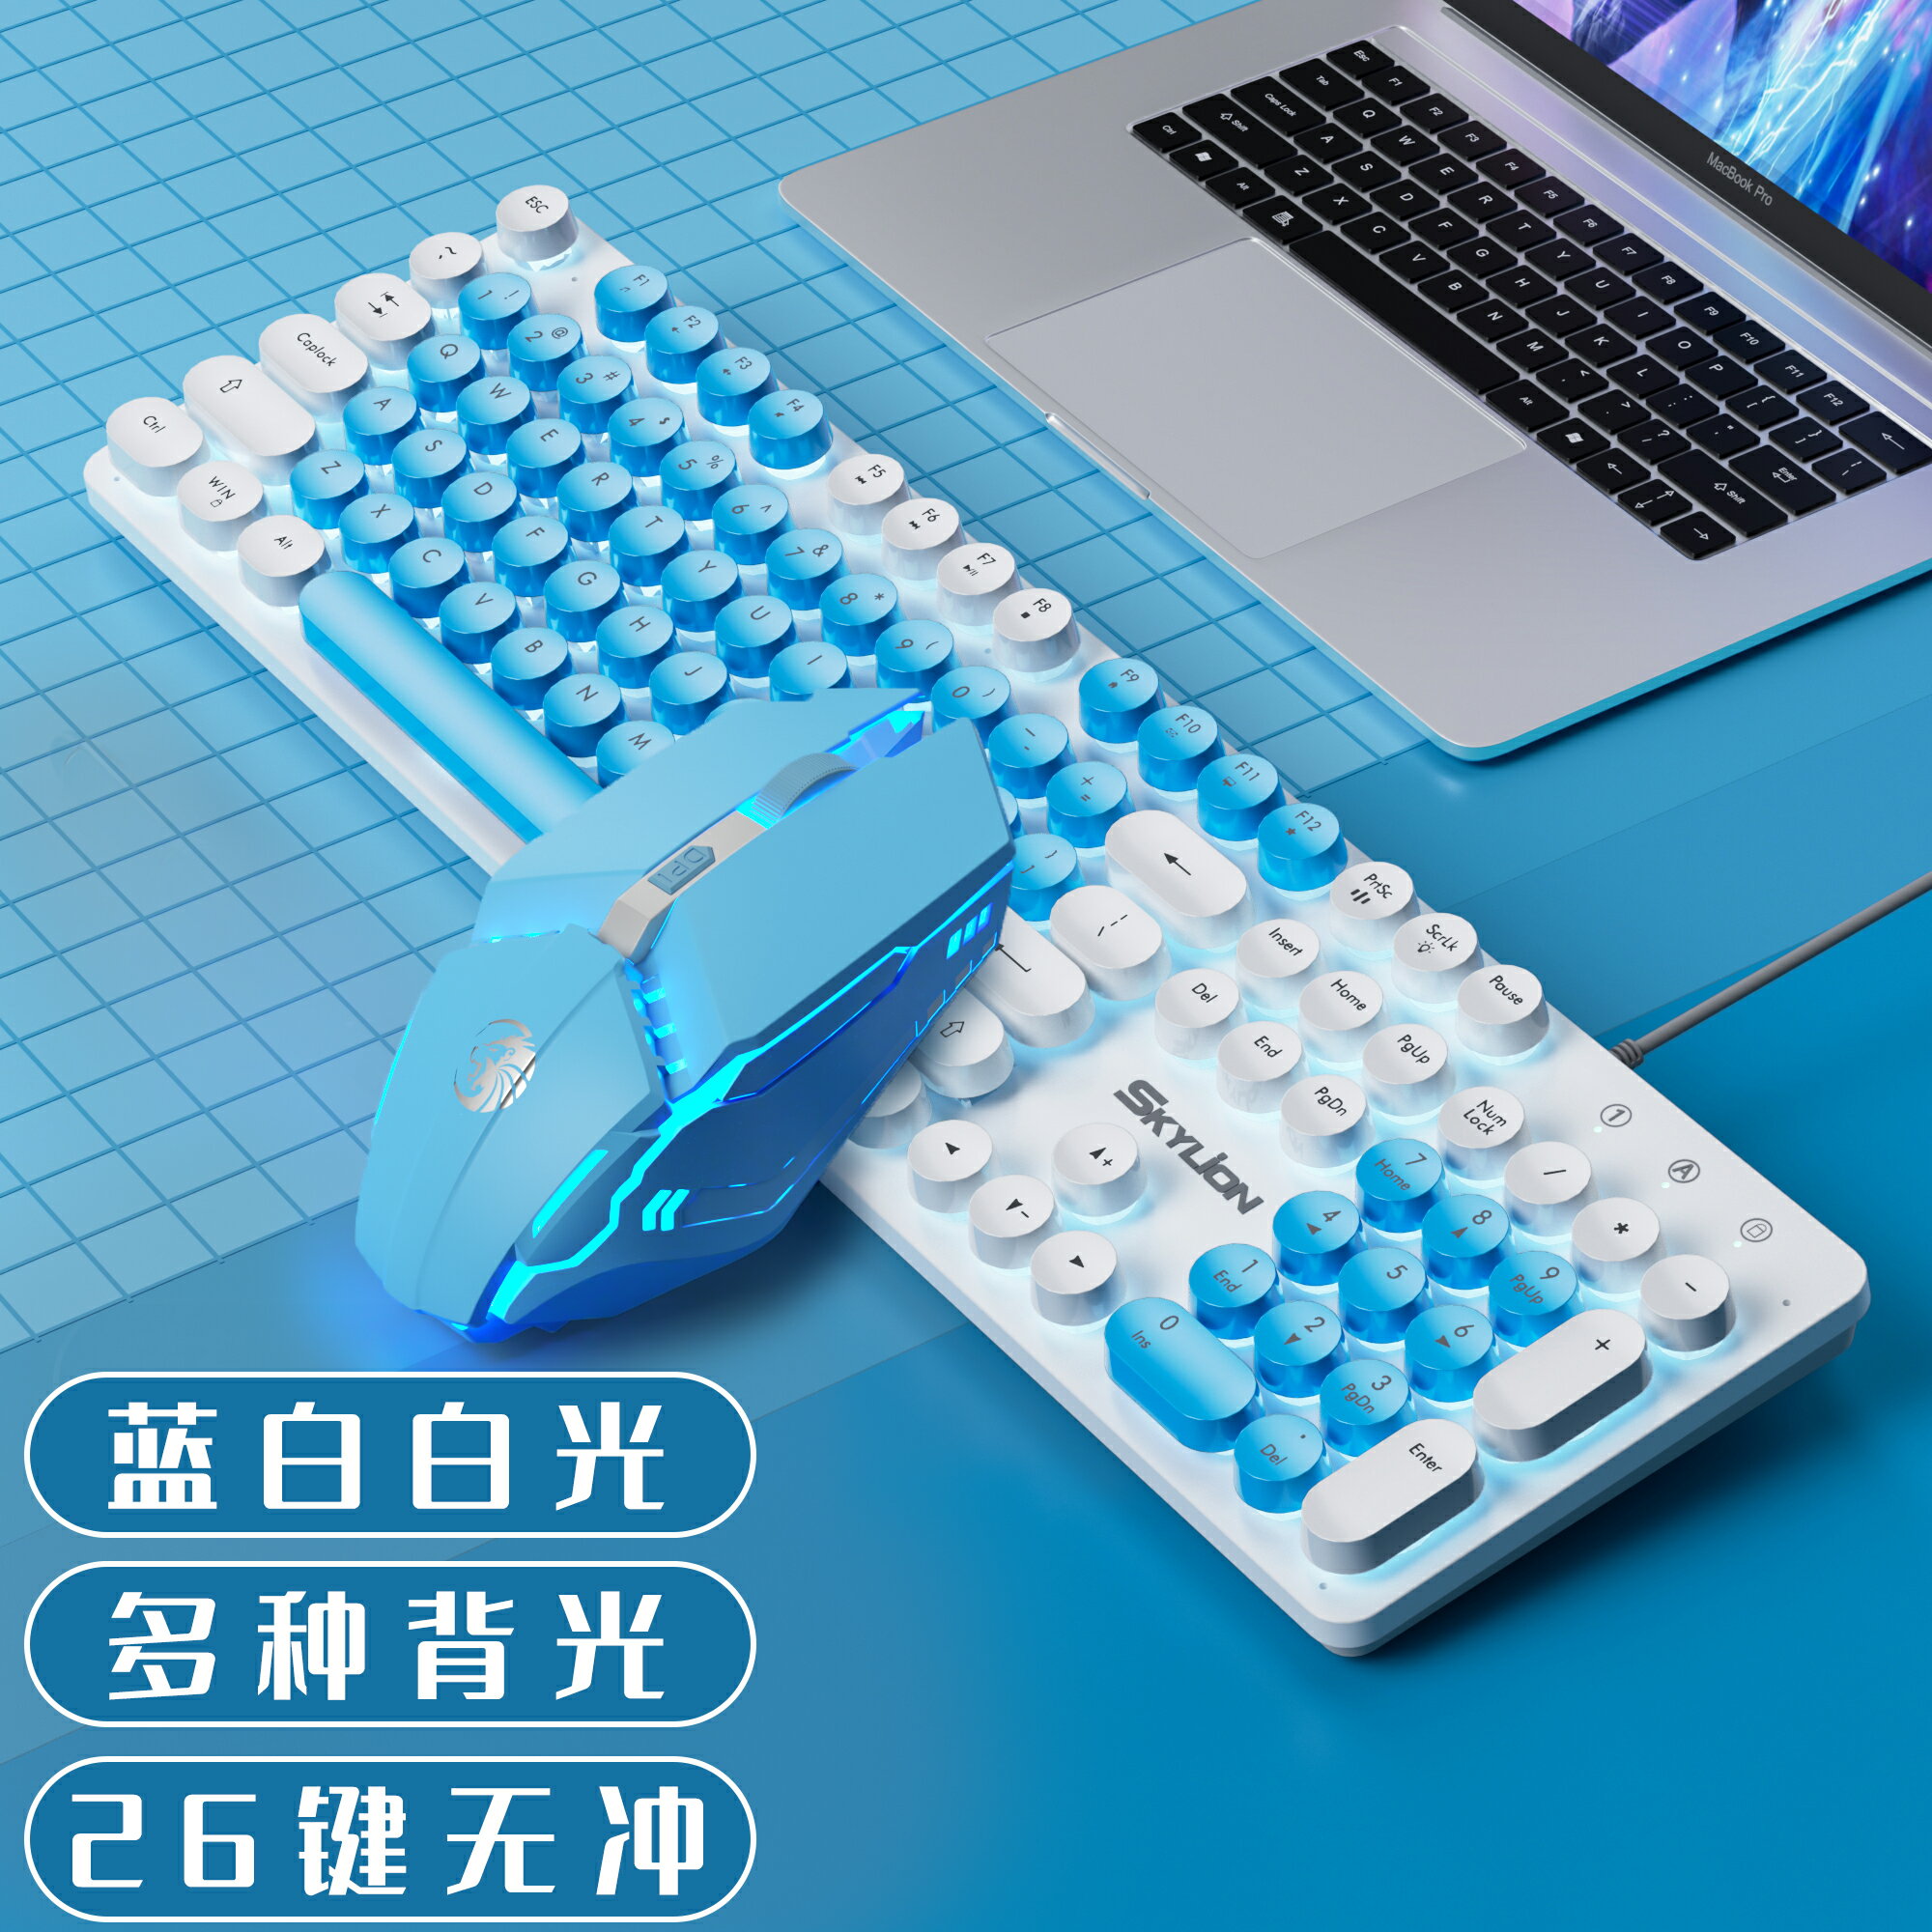 機械鍵盤 RGB機械鍵盤 穹獅H300鍵盤滑鼠套裝 有線朋克雙拼發光usb懸浮機械手感吃雞電腦【XXL19665】